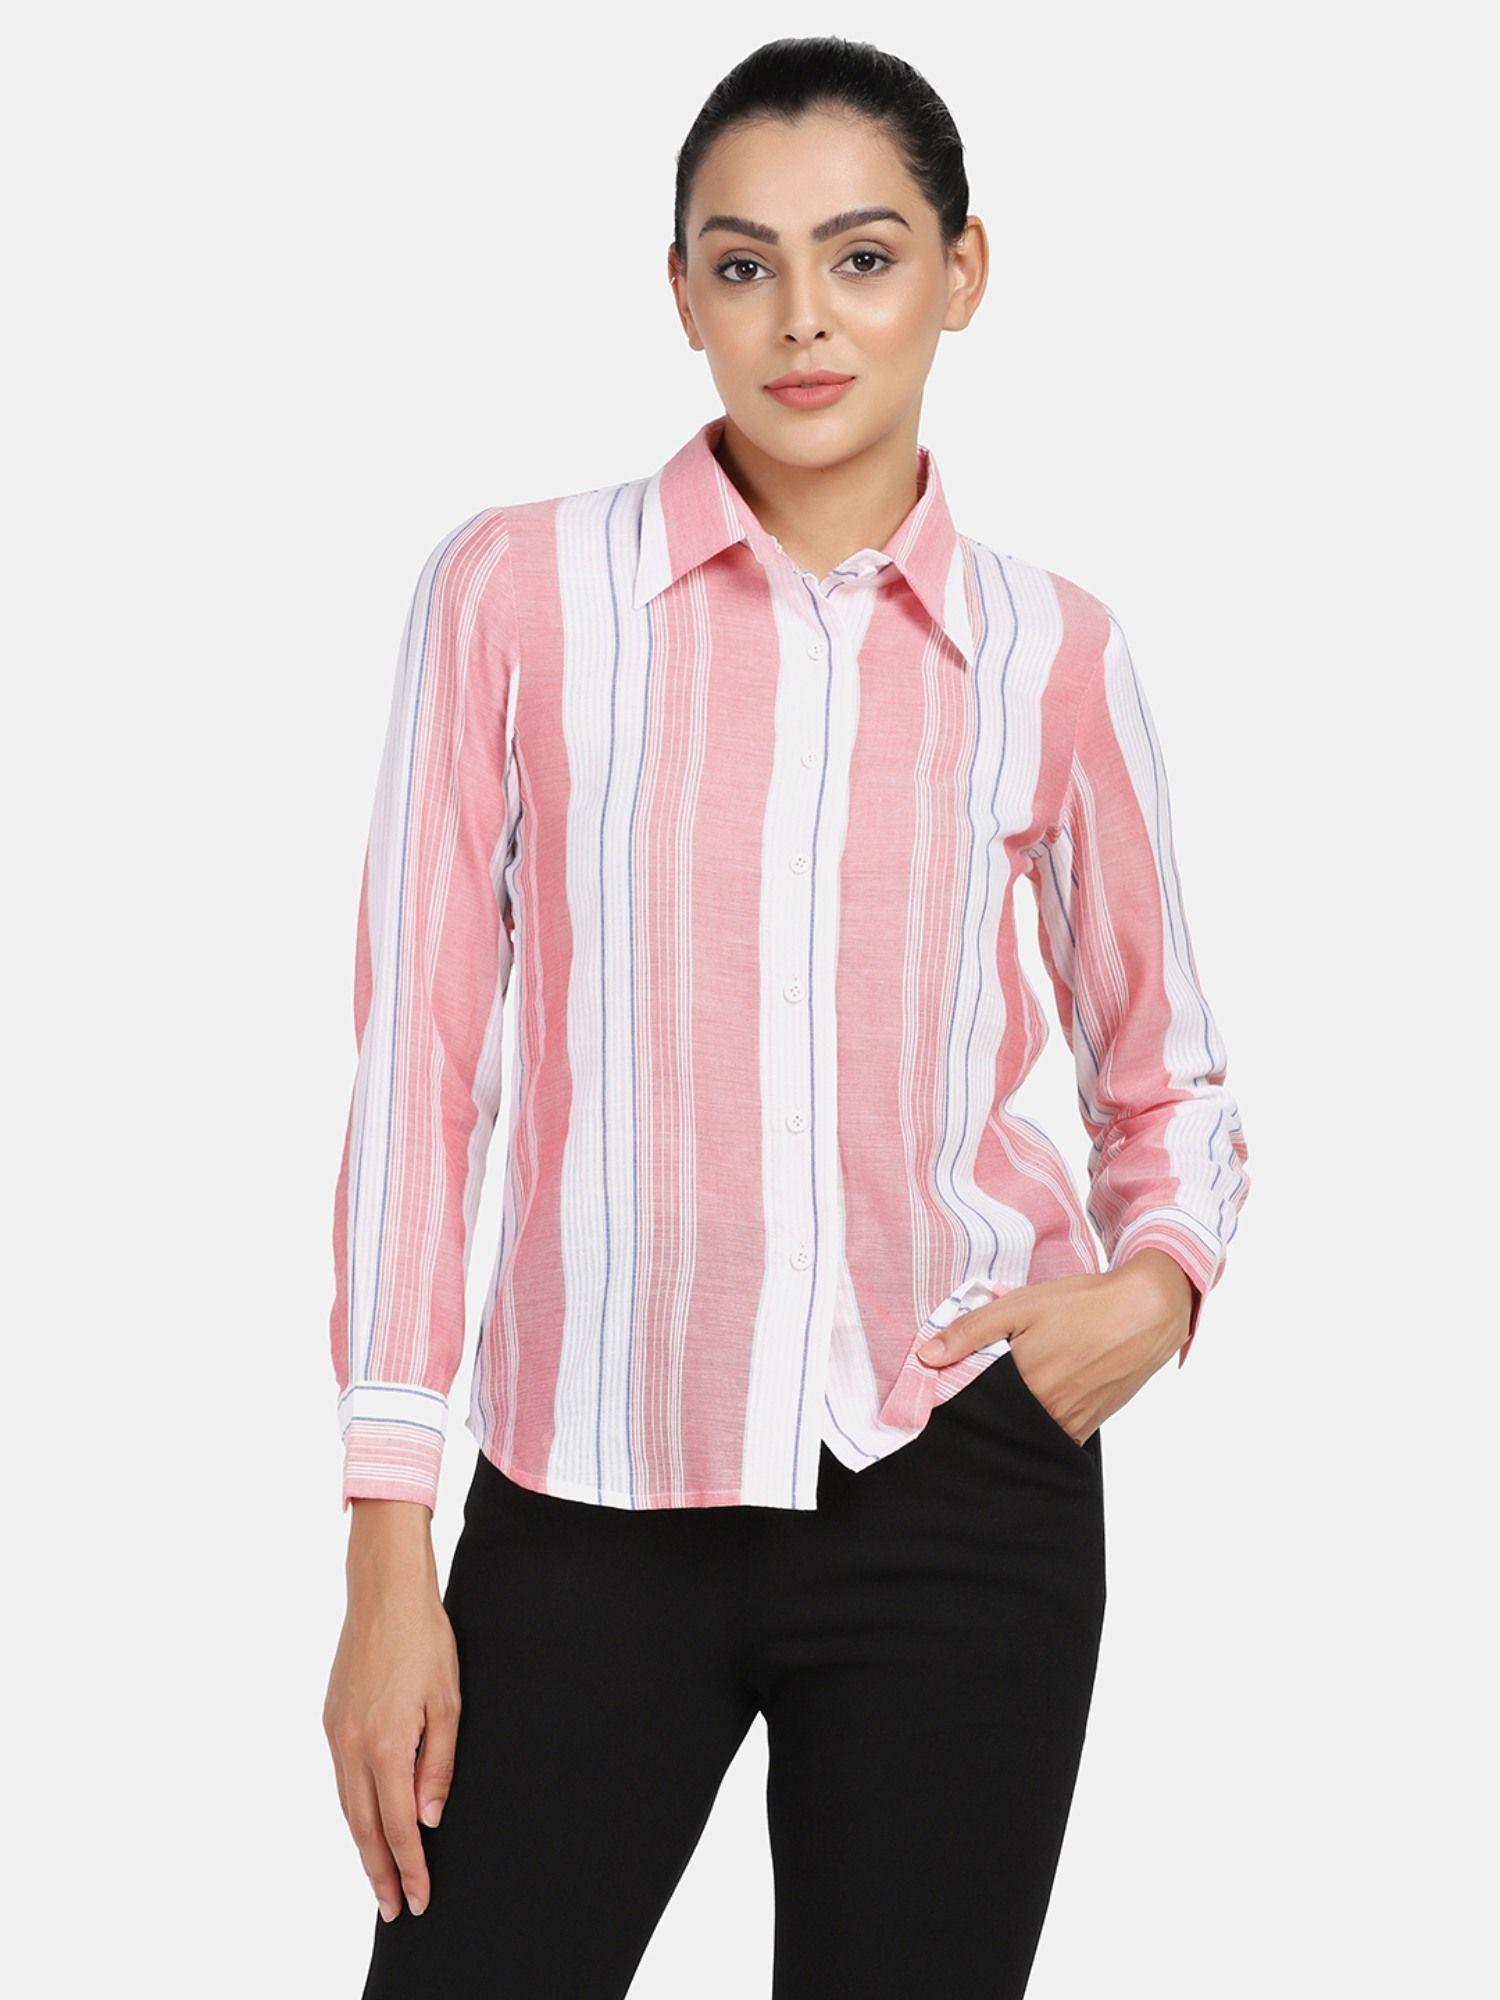 simple collared shirt - peach stripes fabric